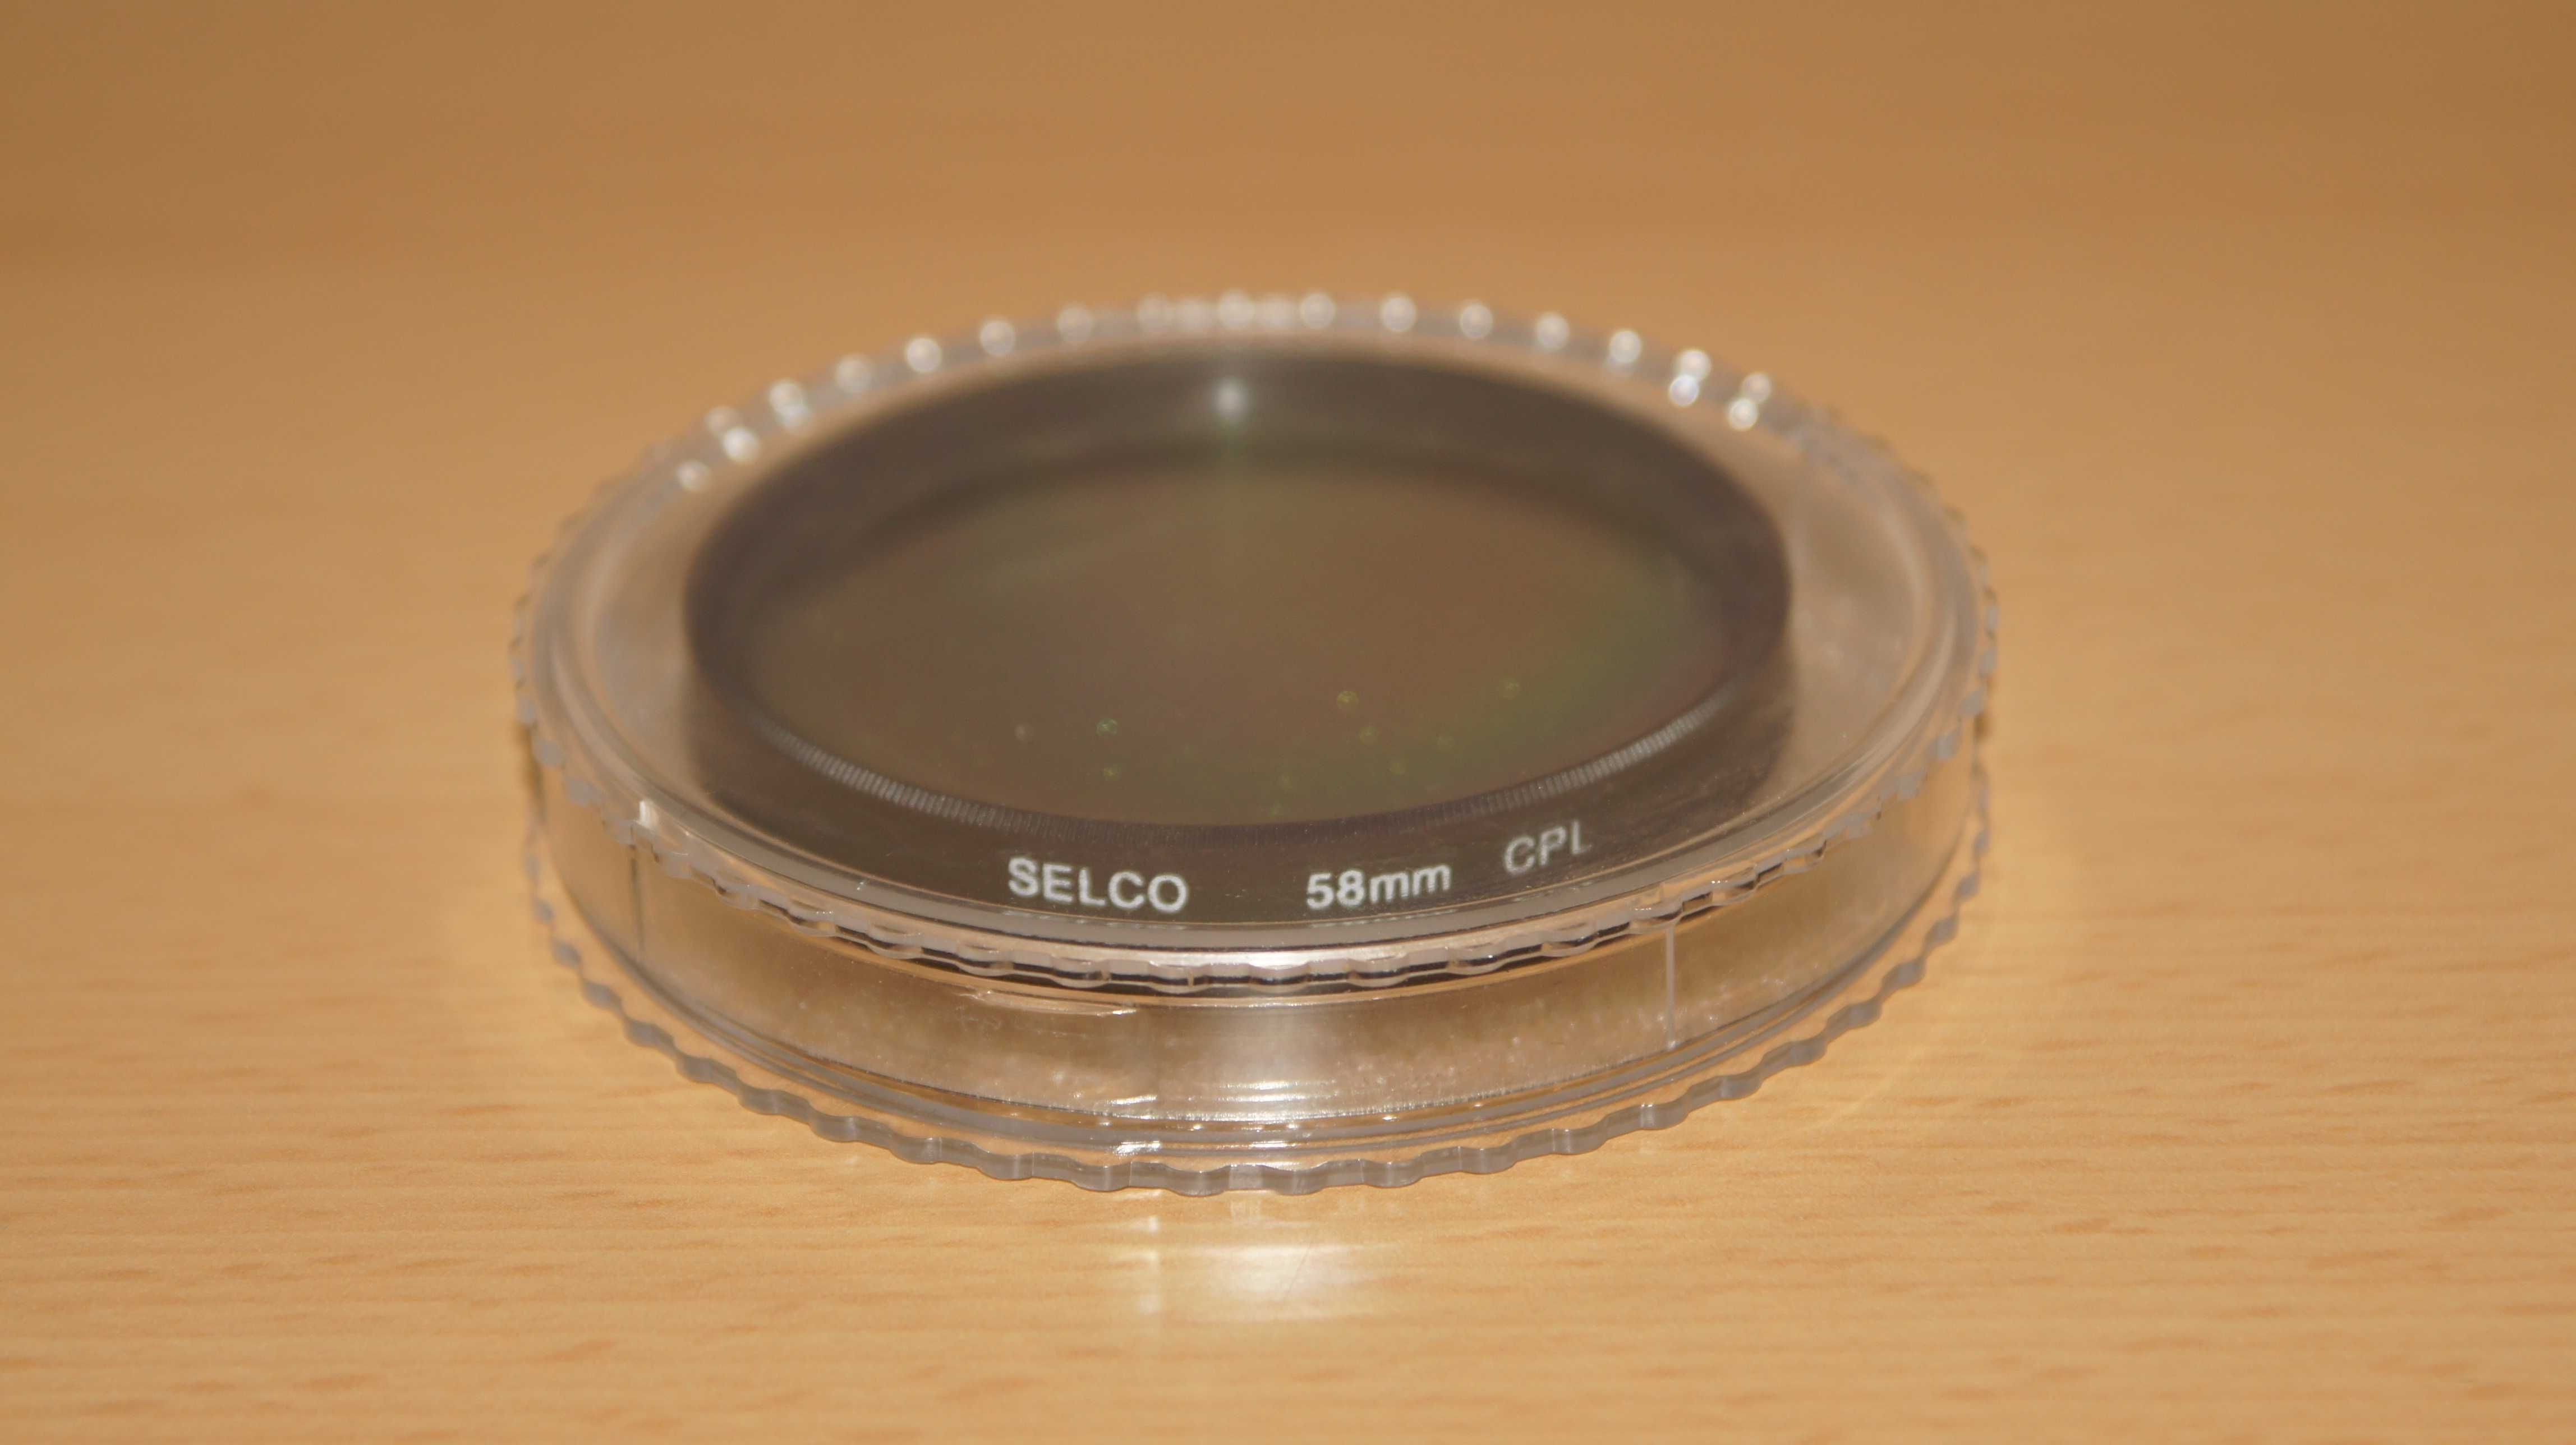 Filtr polaryzacyjny w opakowaniu 58mm Selco